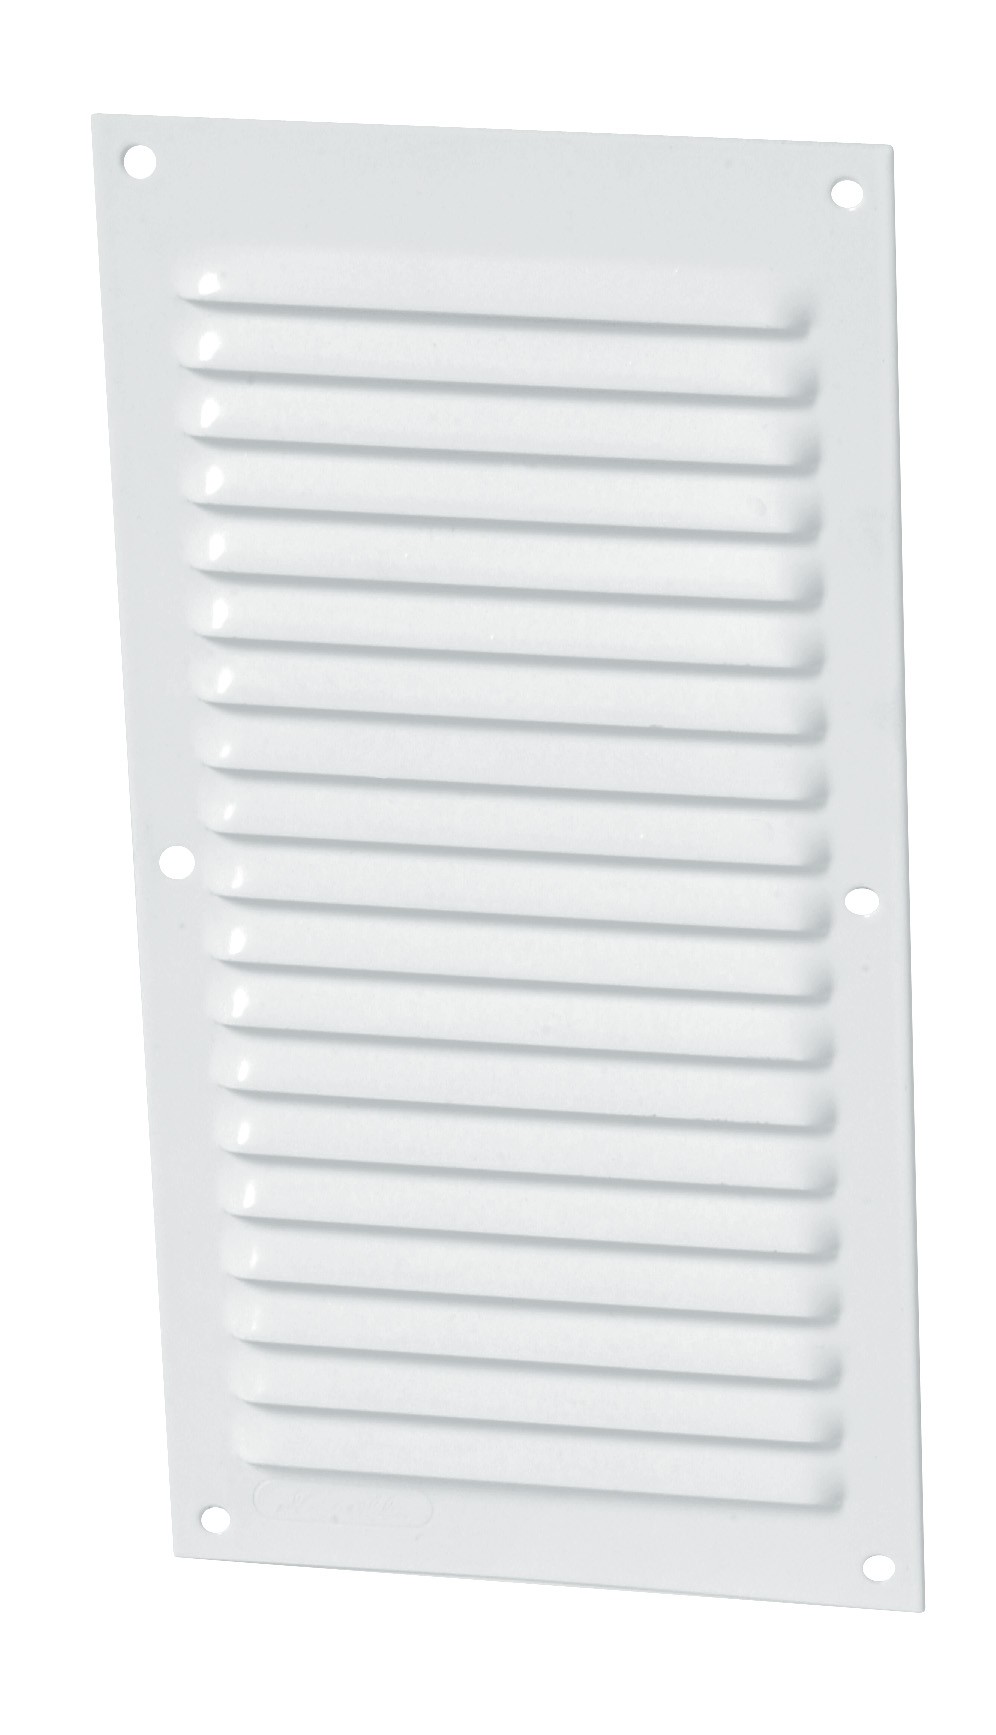 Alluminio laccato bianco con zanzariera: Rettangolare verticale 20x10